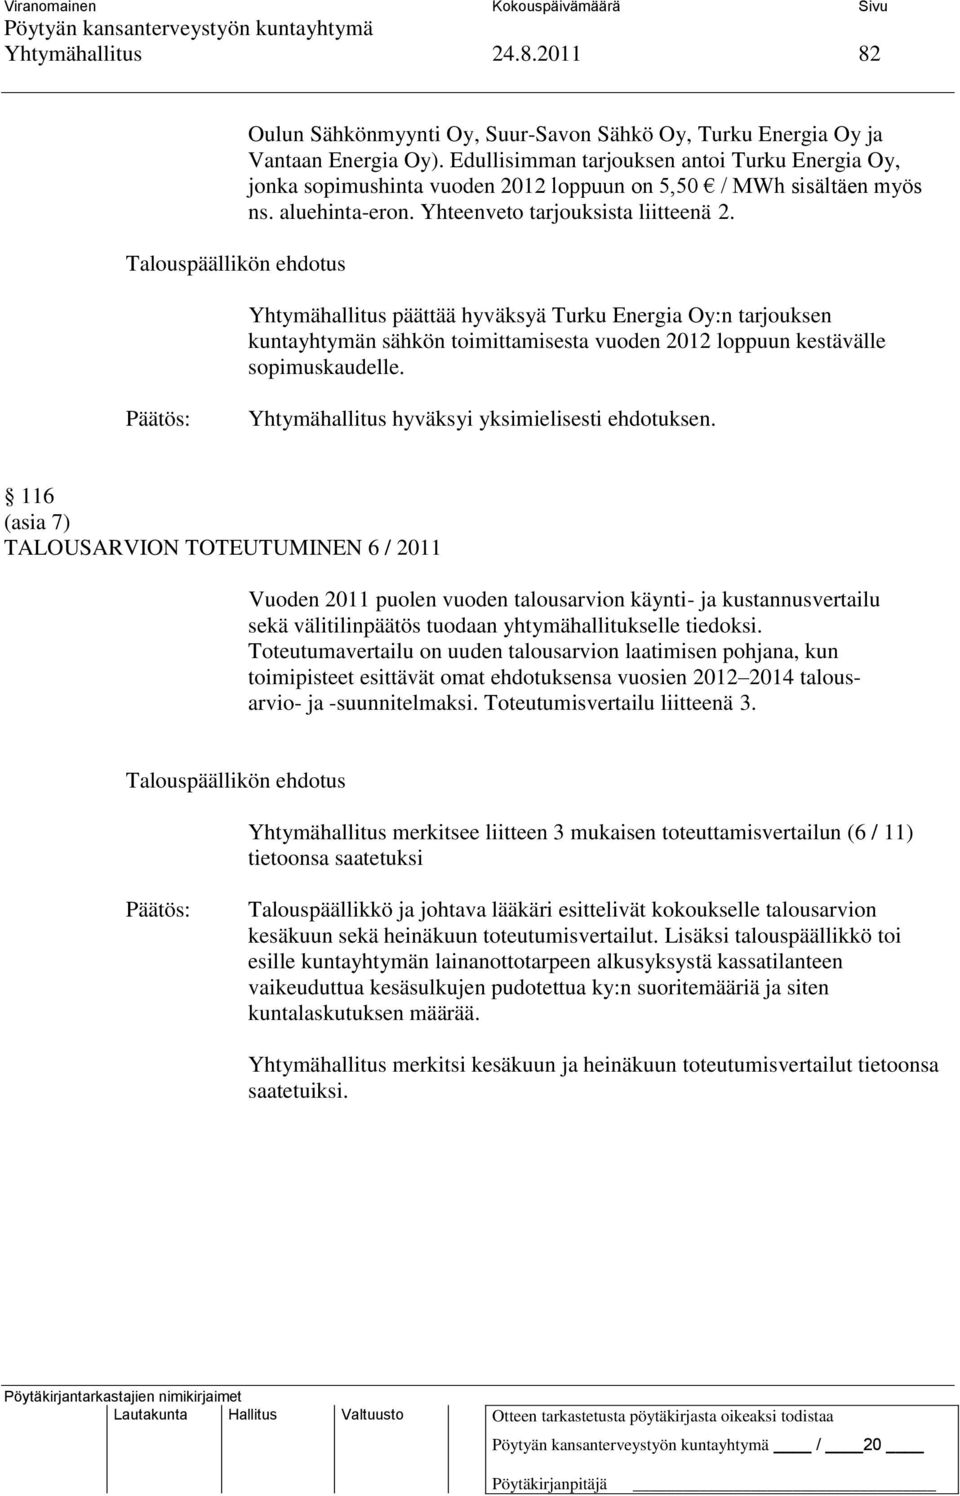 Yhtymähallitus päättää hyväksyä Turku Energia Oy:n tarjouksen kuntayhtymän sähkön toimittamisesta vuoden 2012 loppuun kestävälle sopimuskaudelle. Yhtymähallitus hyväksyi yksimielisesti ehdotuksen.